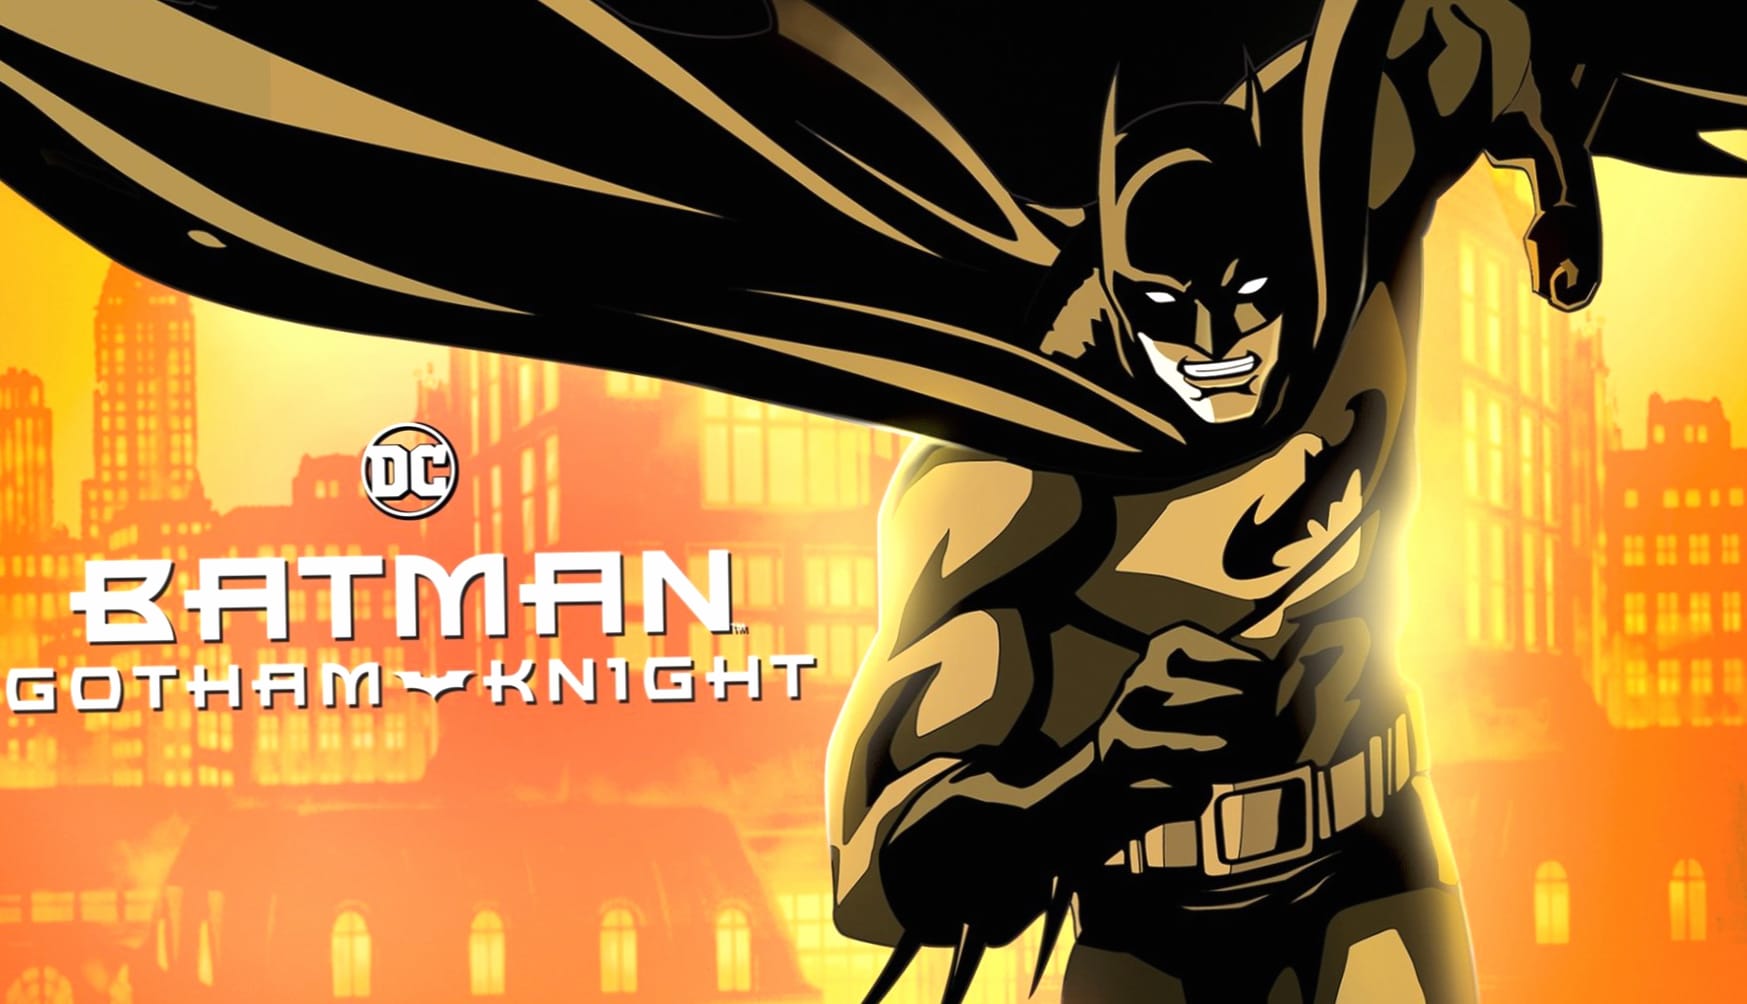 Batman Gotham Knight at 1024 x 1024 iPad size wallpapers HD quality